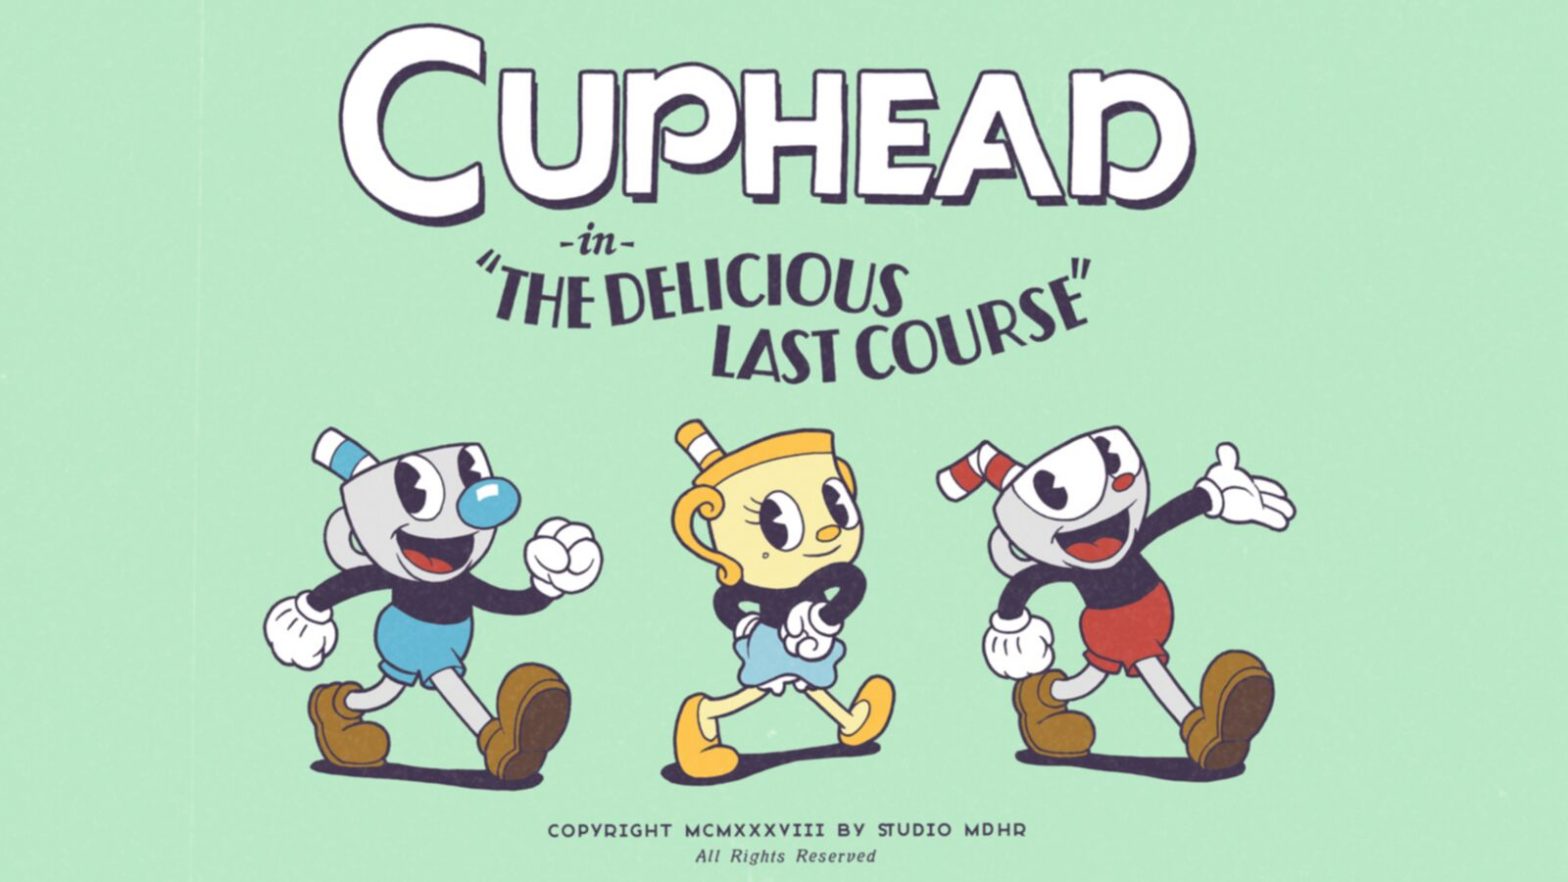 Suite de l'univers de la bande dessinée Cuphead : Le délicieux dernier cours